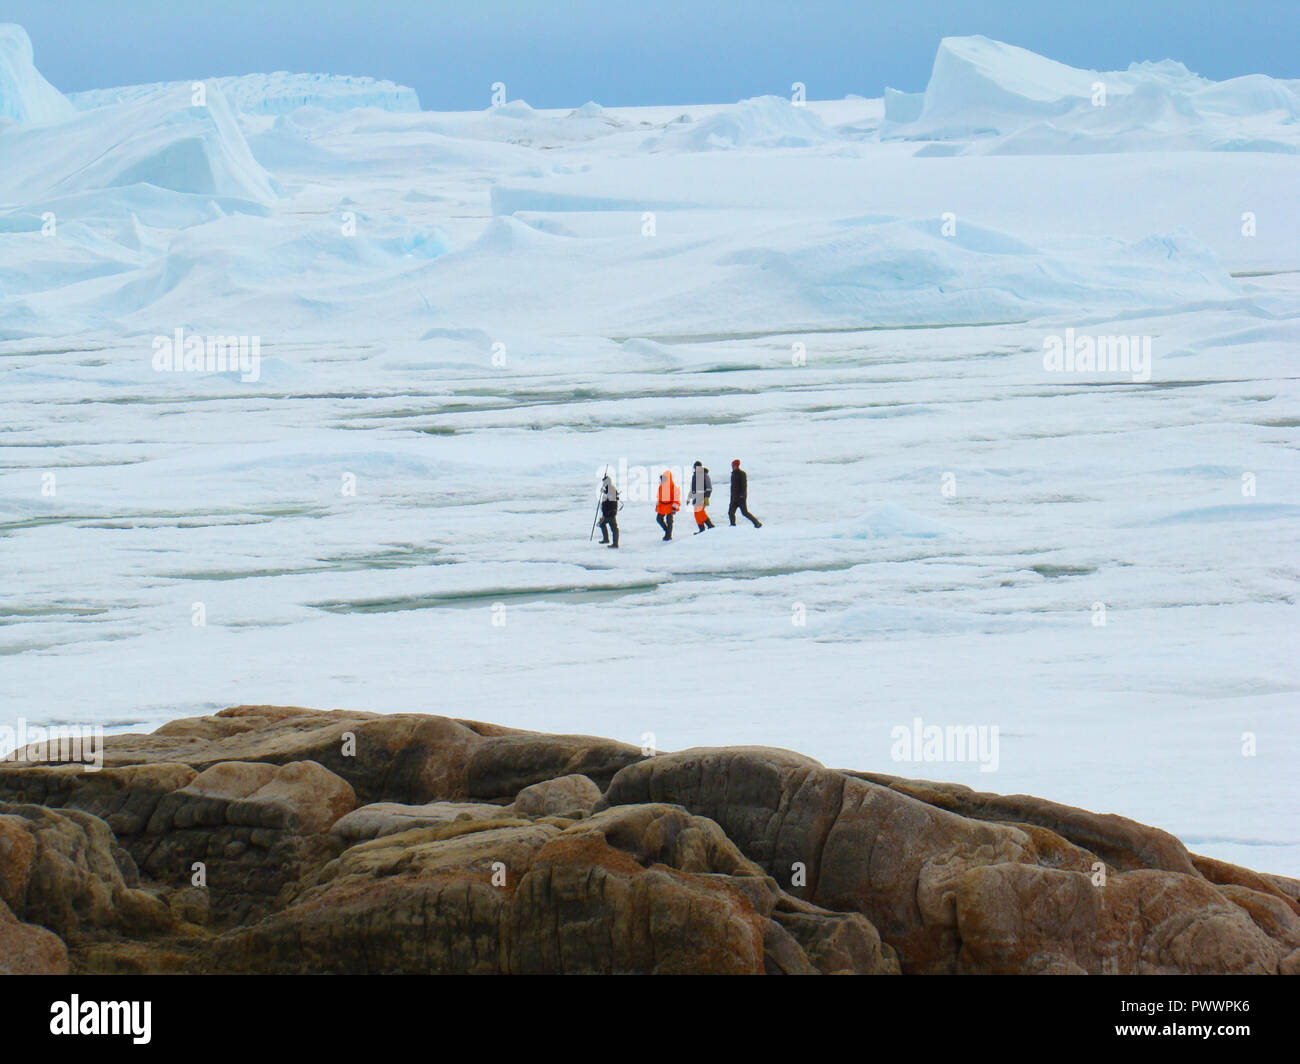 Les gens, les scientifiques, les chercheurs sont sur la montagne de pierre. Près de la rive de l'océan et des icebergs. L'antarctique. Banque D'Images